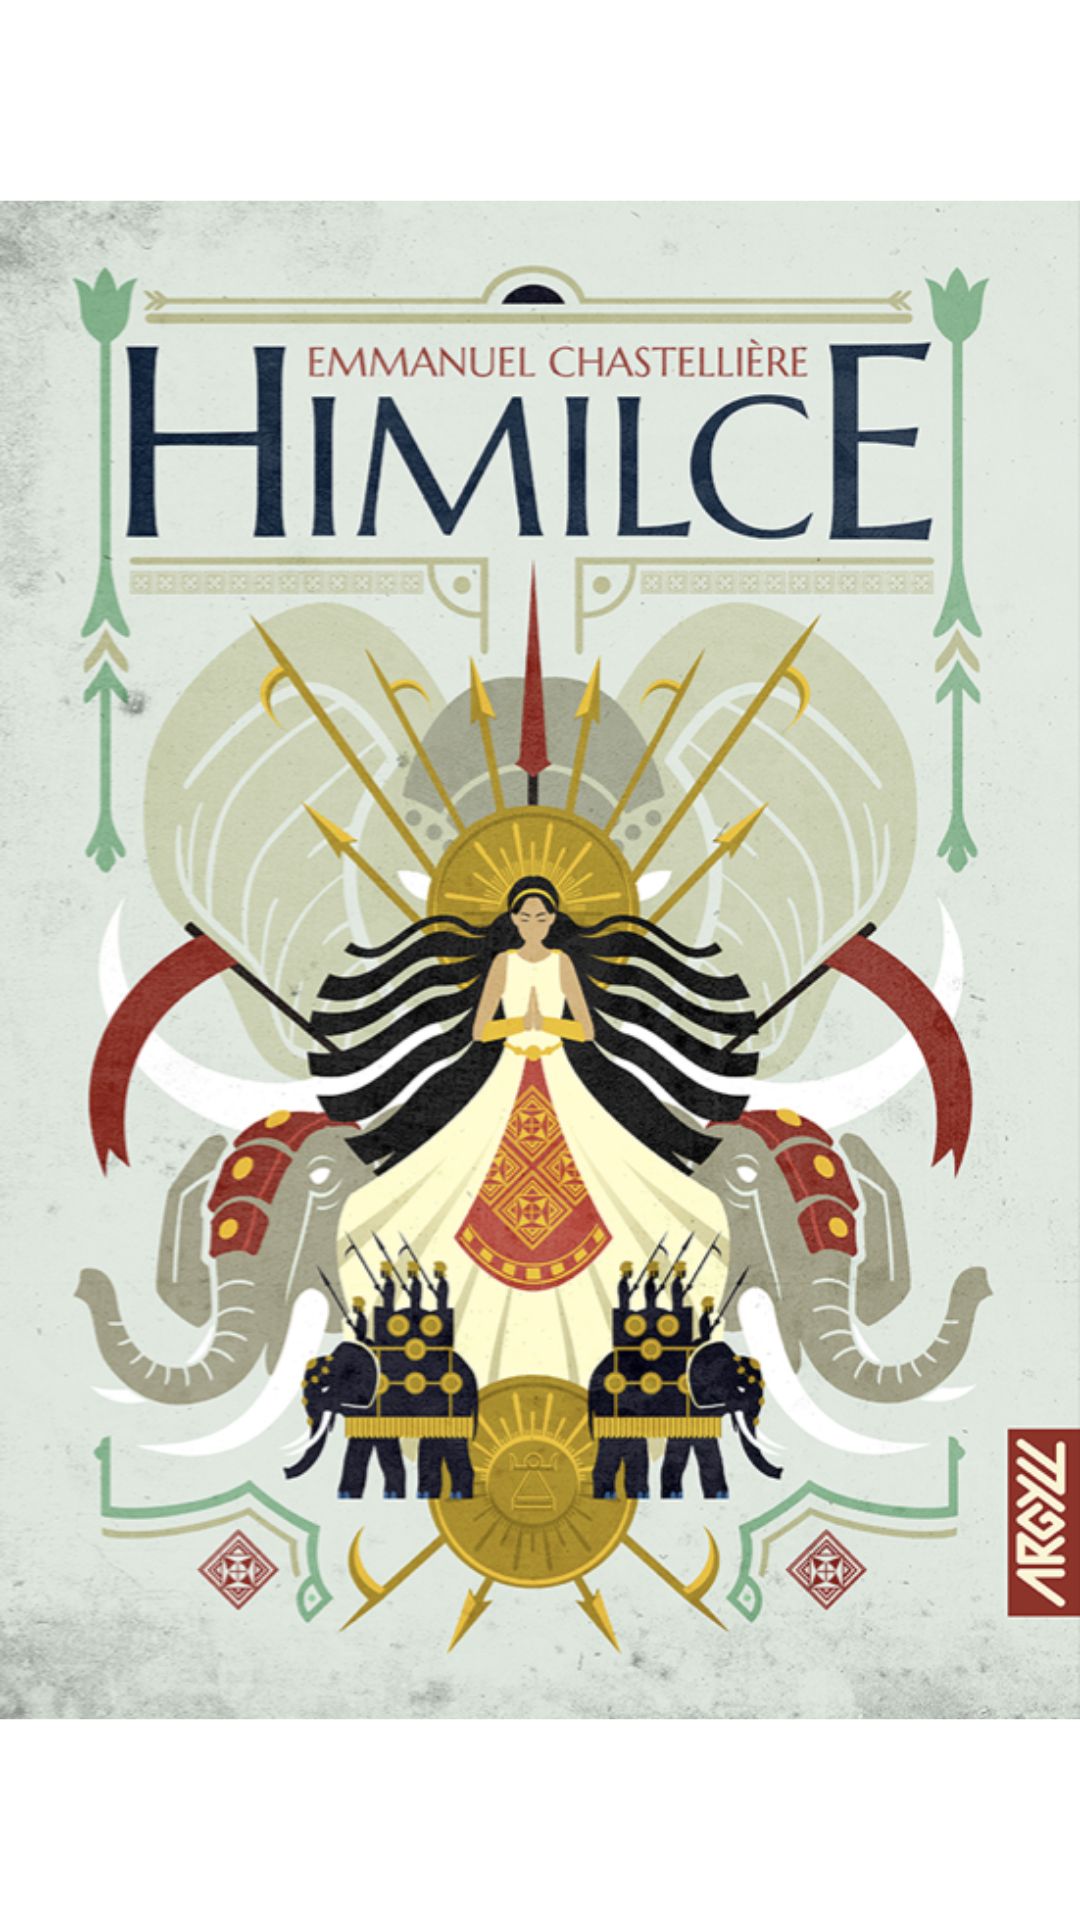 Himilce, d'Emmanuel Chastellière